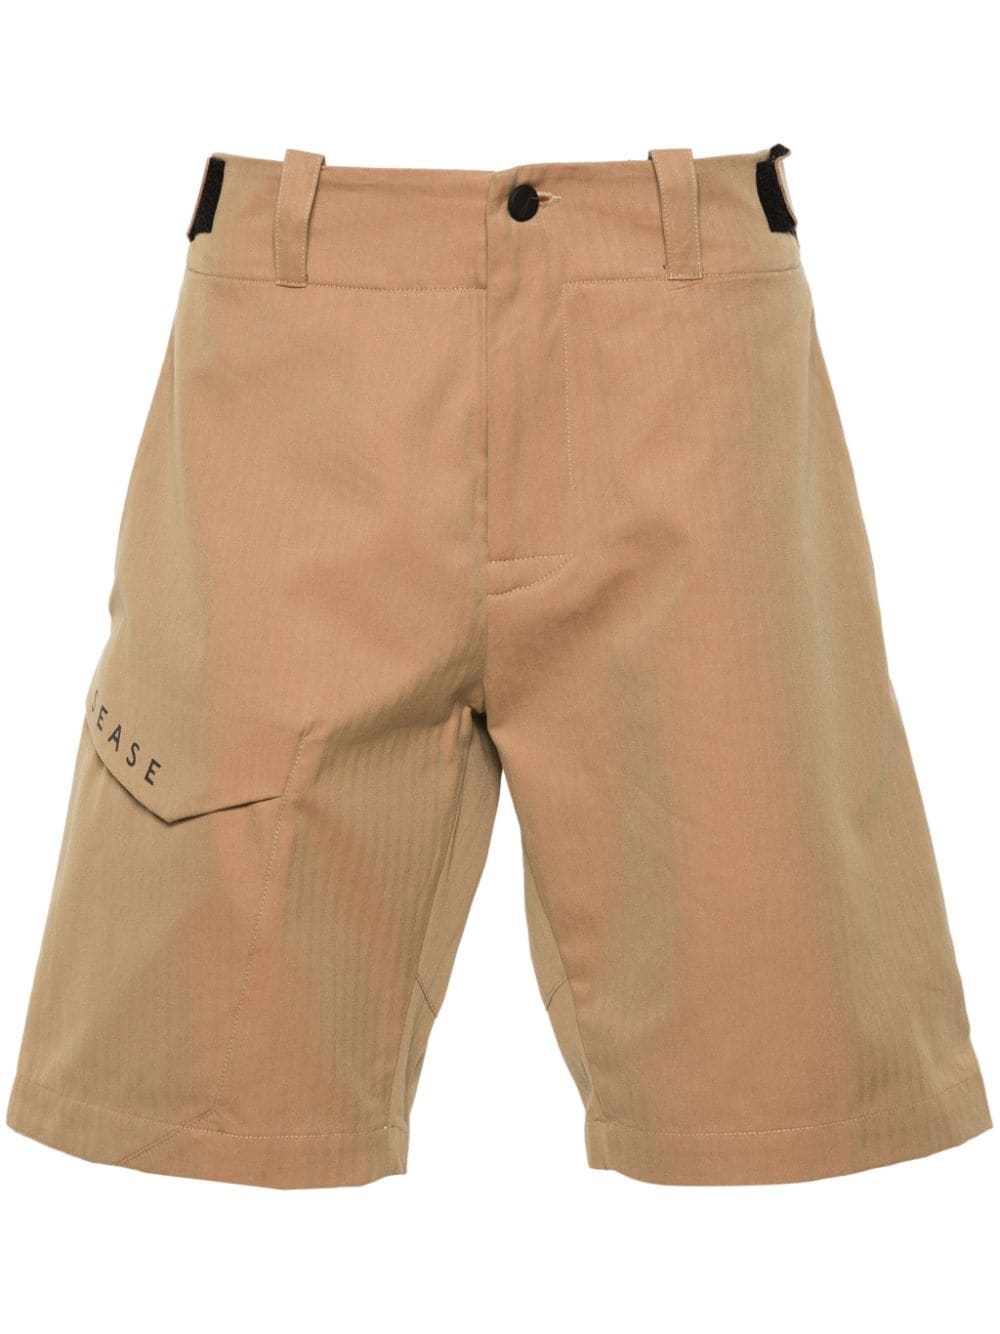 Sease herringbone bermuda shorts - Brown von Sease